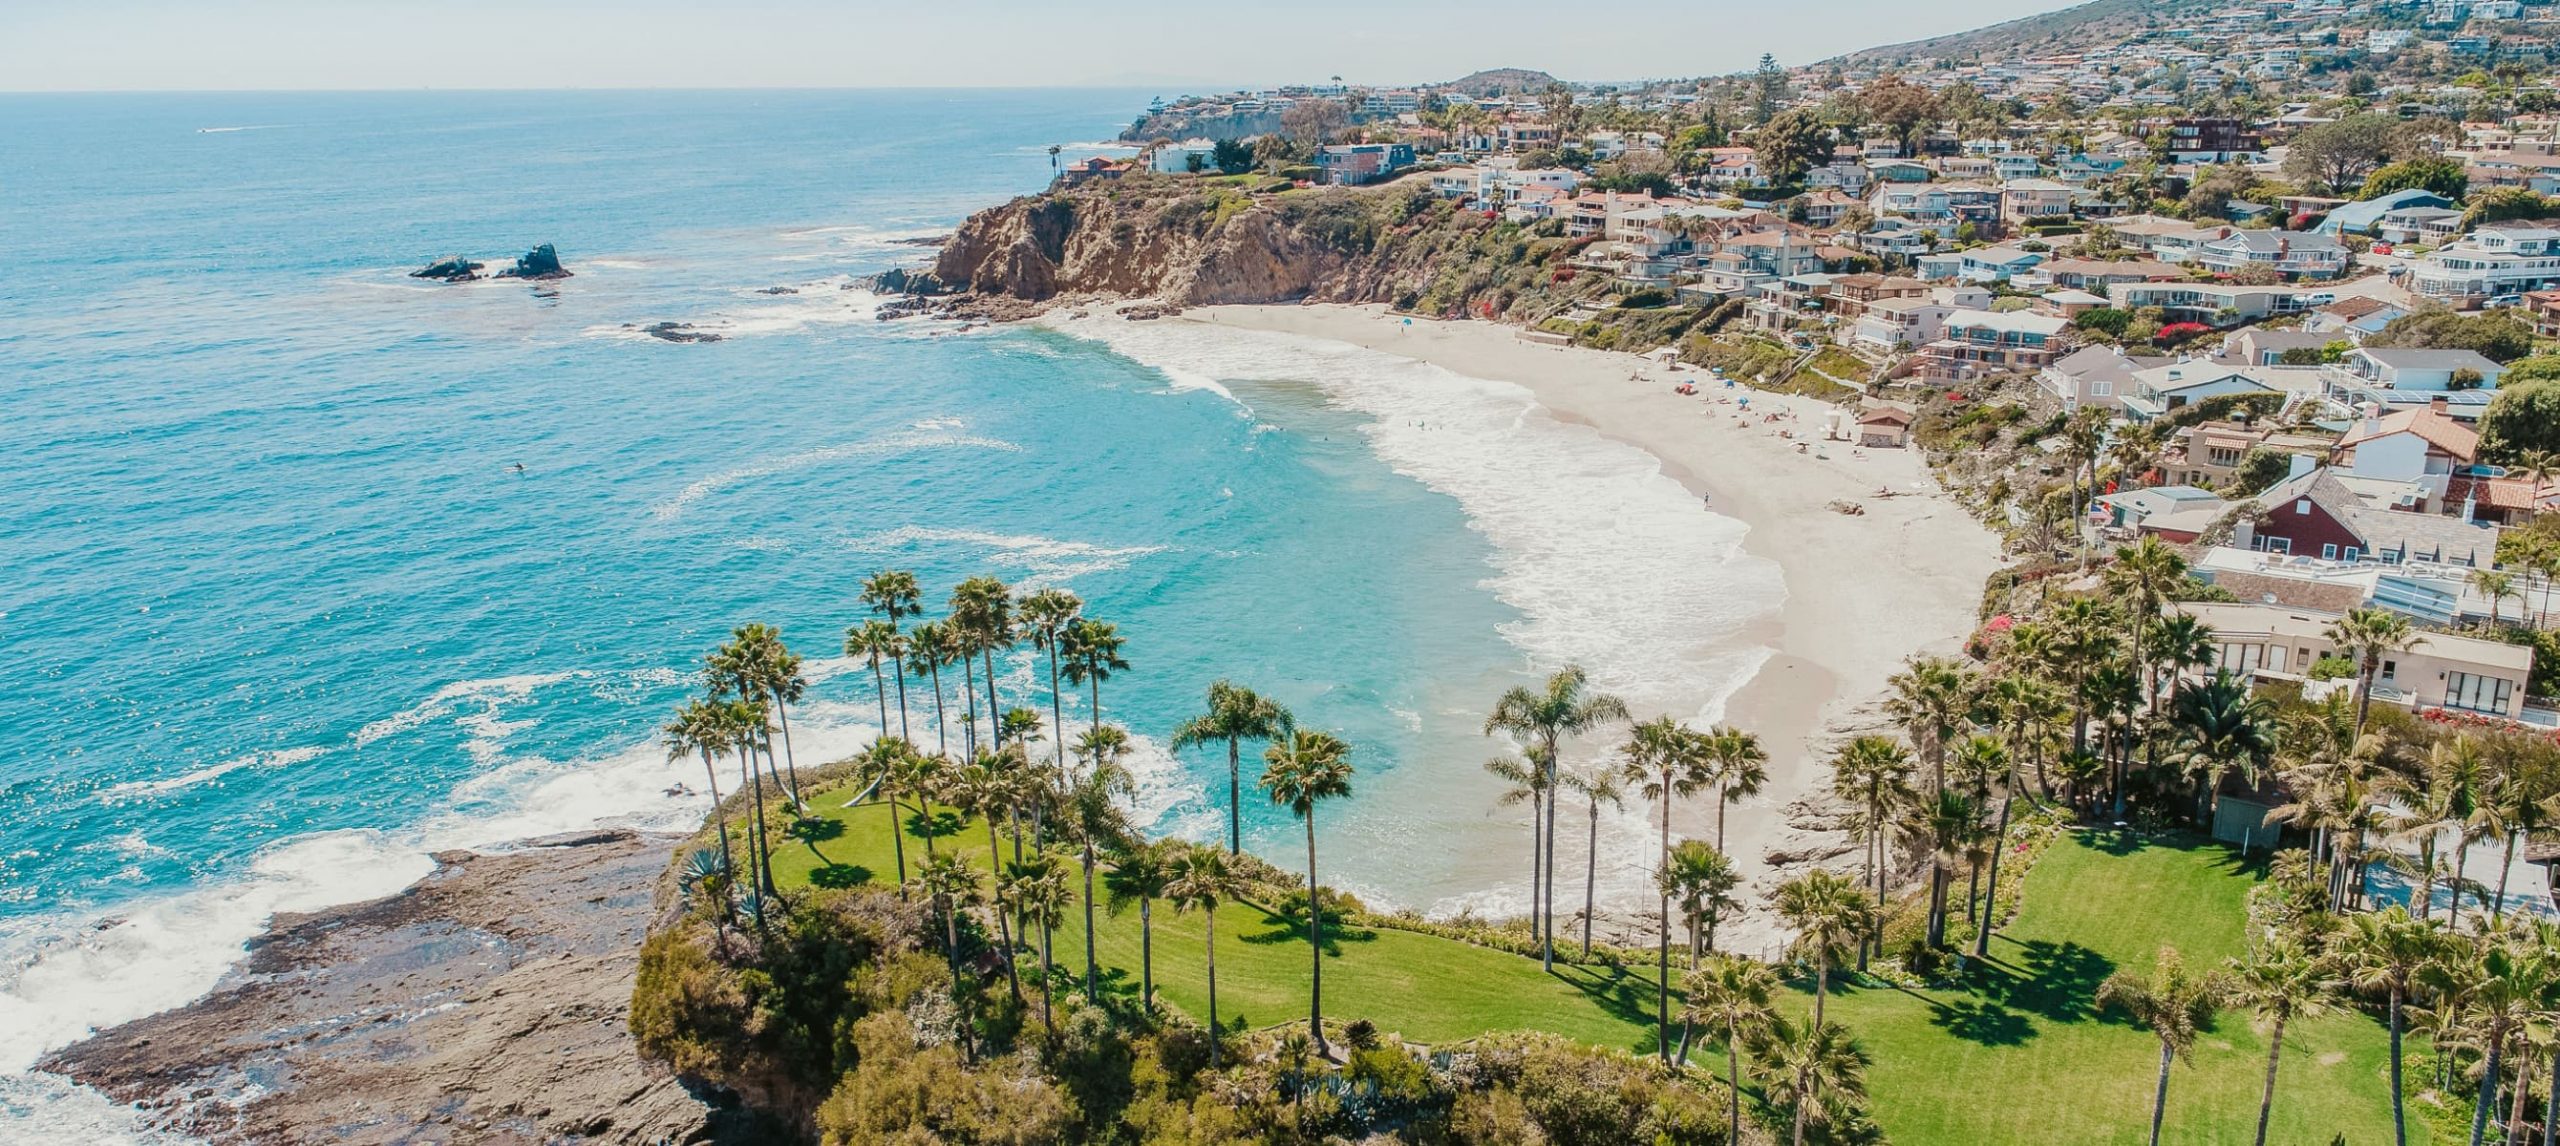 panorama of california beach